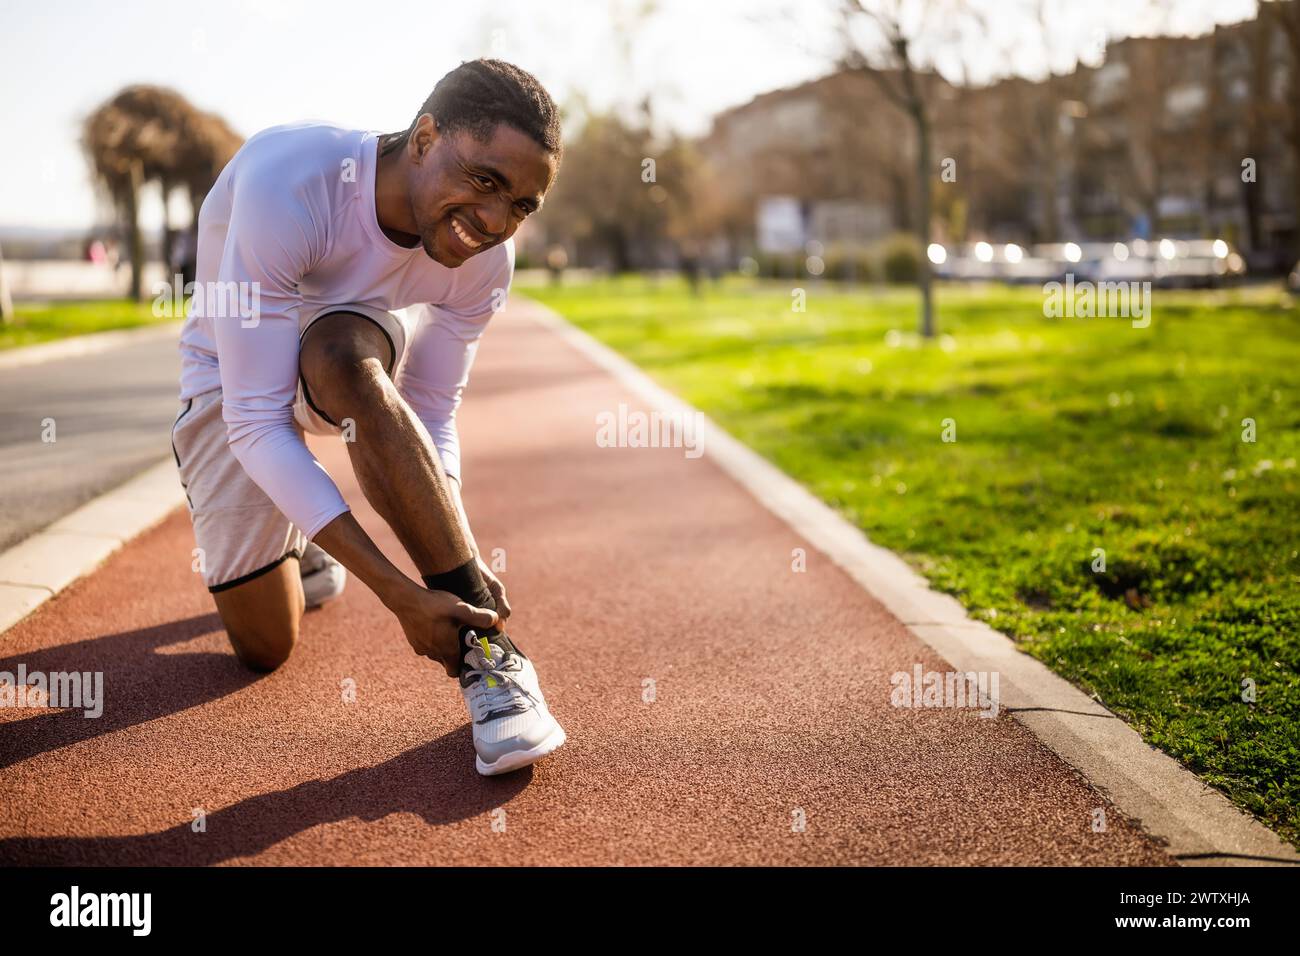 Un jeune homme afro-américain est blessé en faisant du jogging. Il s'est tordu la cheville. Banque D'Images